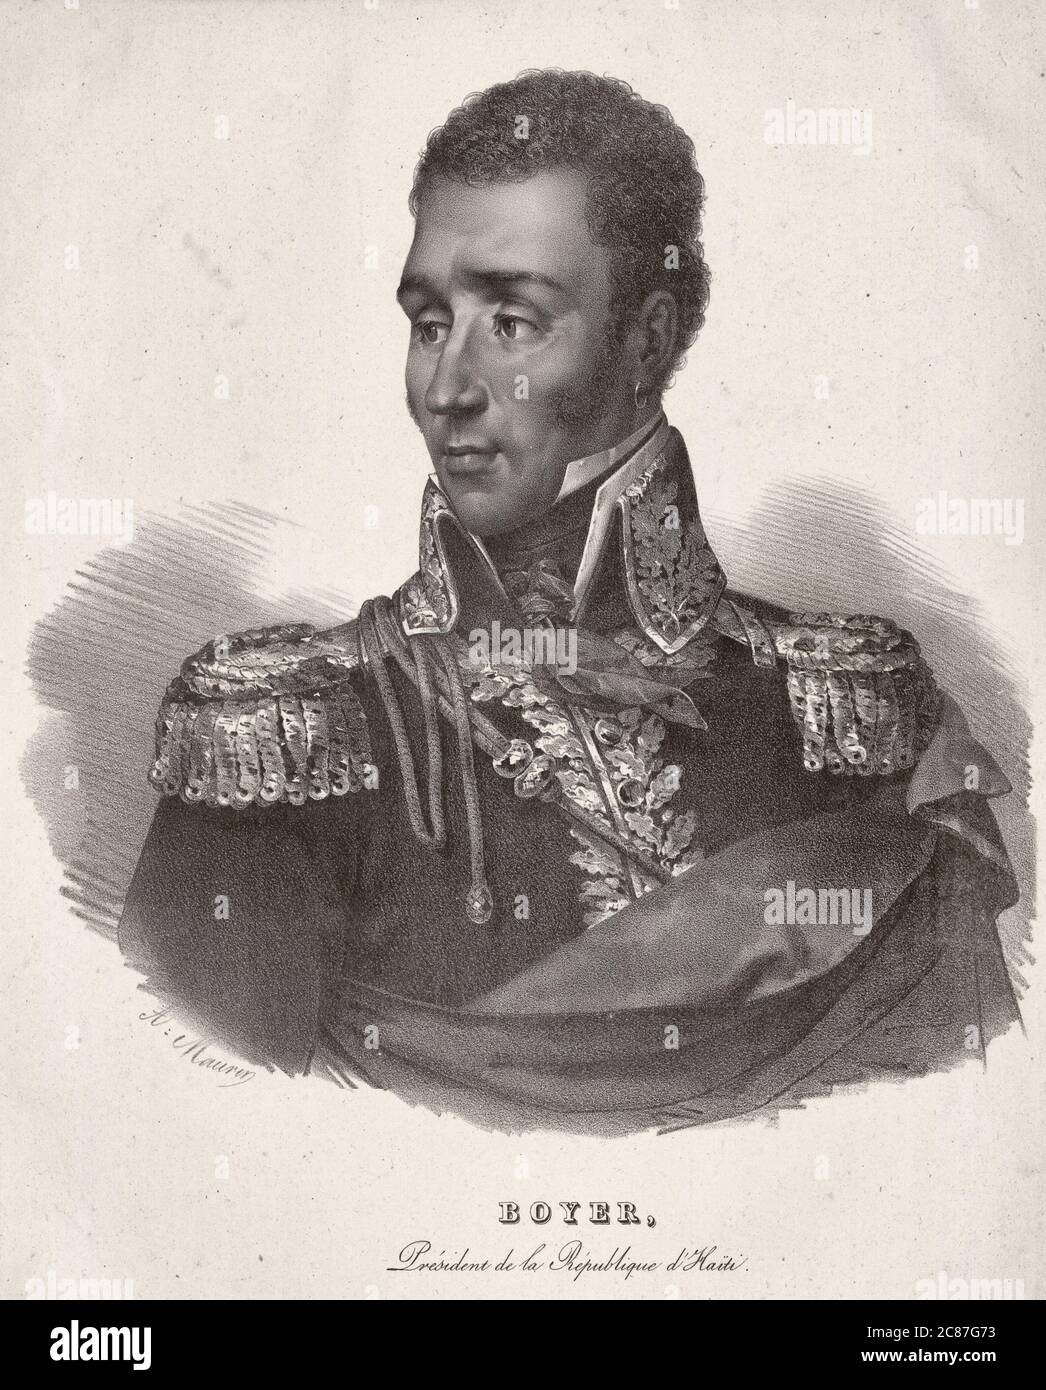 Jean-Pierre Boyer, presidente della Repubblica di Haiti, circa 1825 Foto Stock